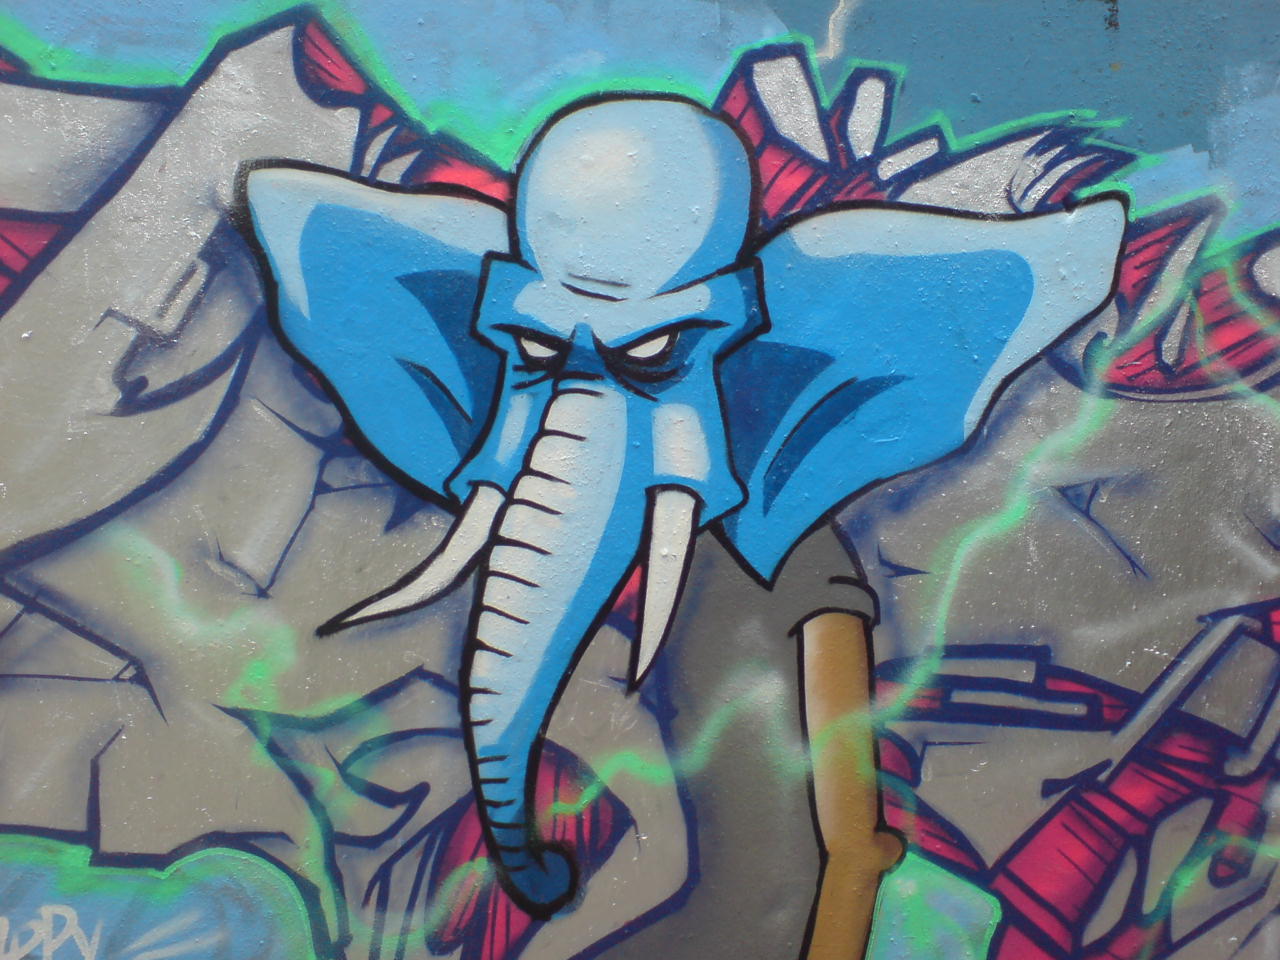 46+] Cartoon Graffiti Wallpapers - WallpaperSafari